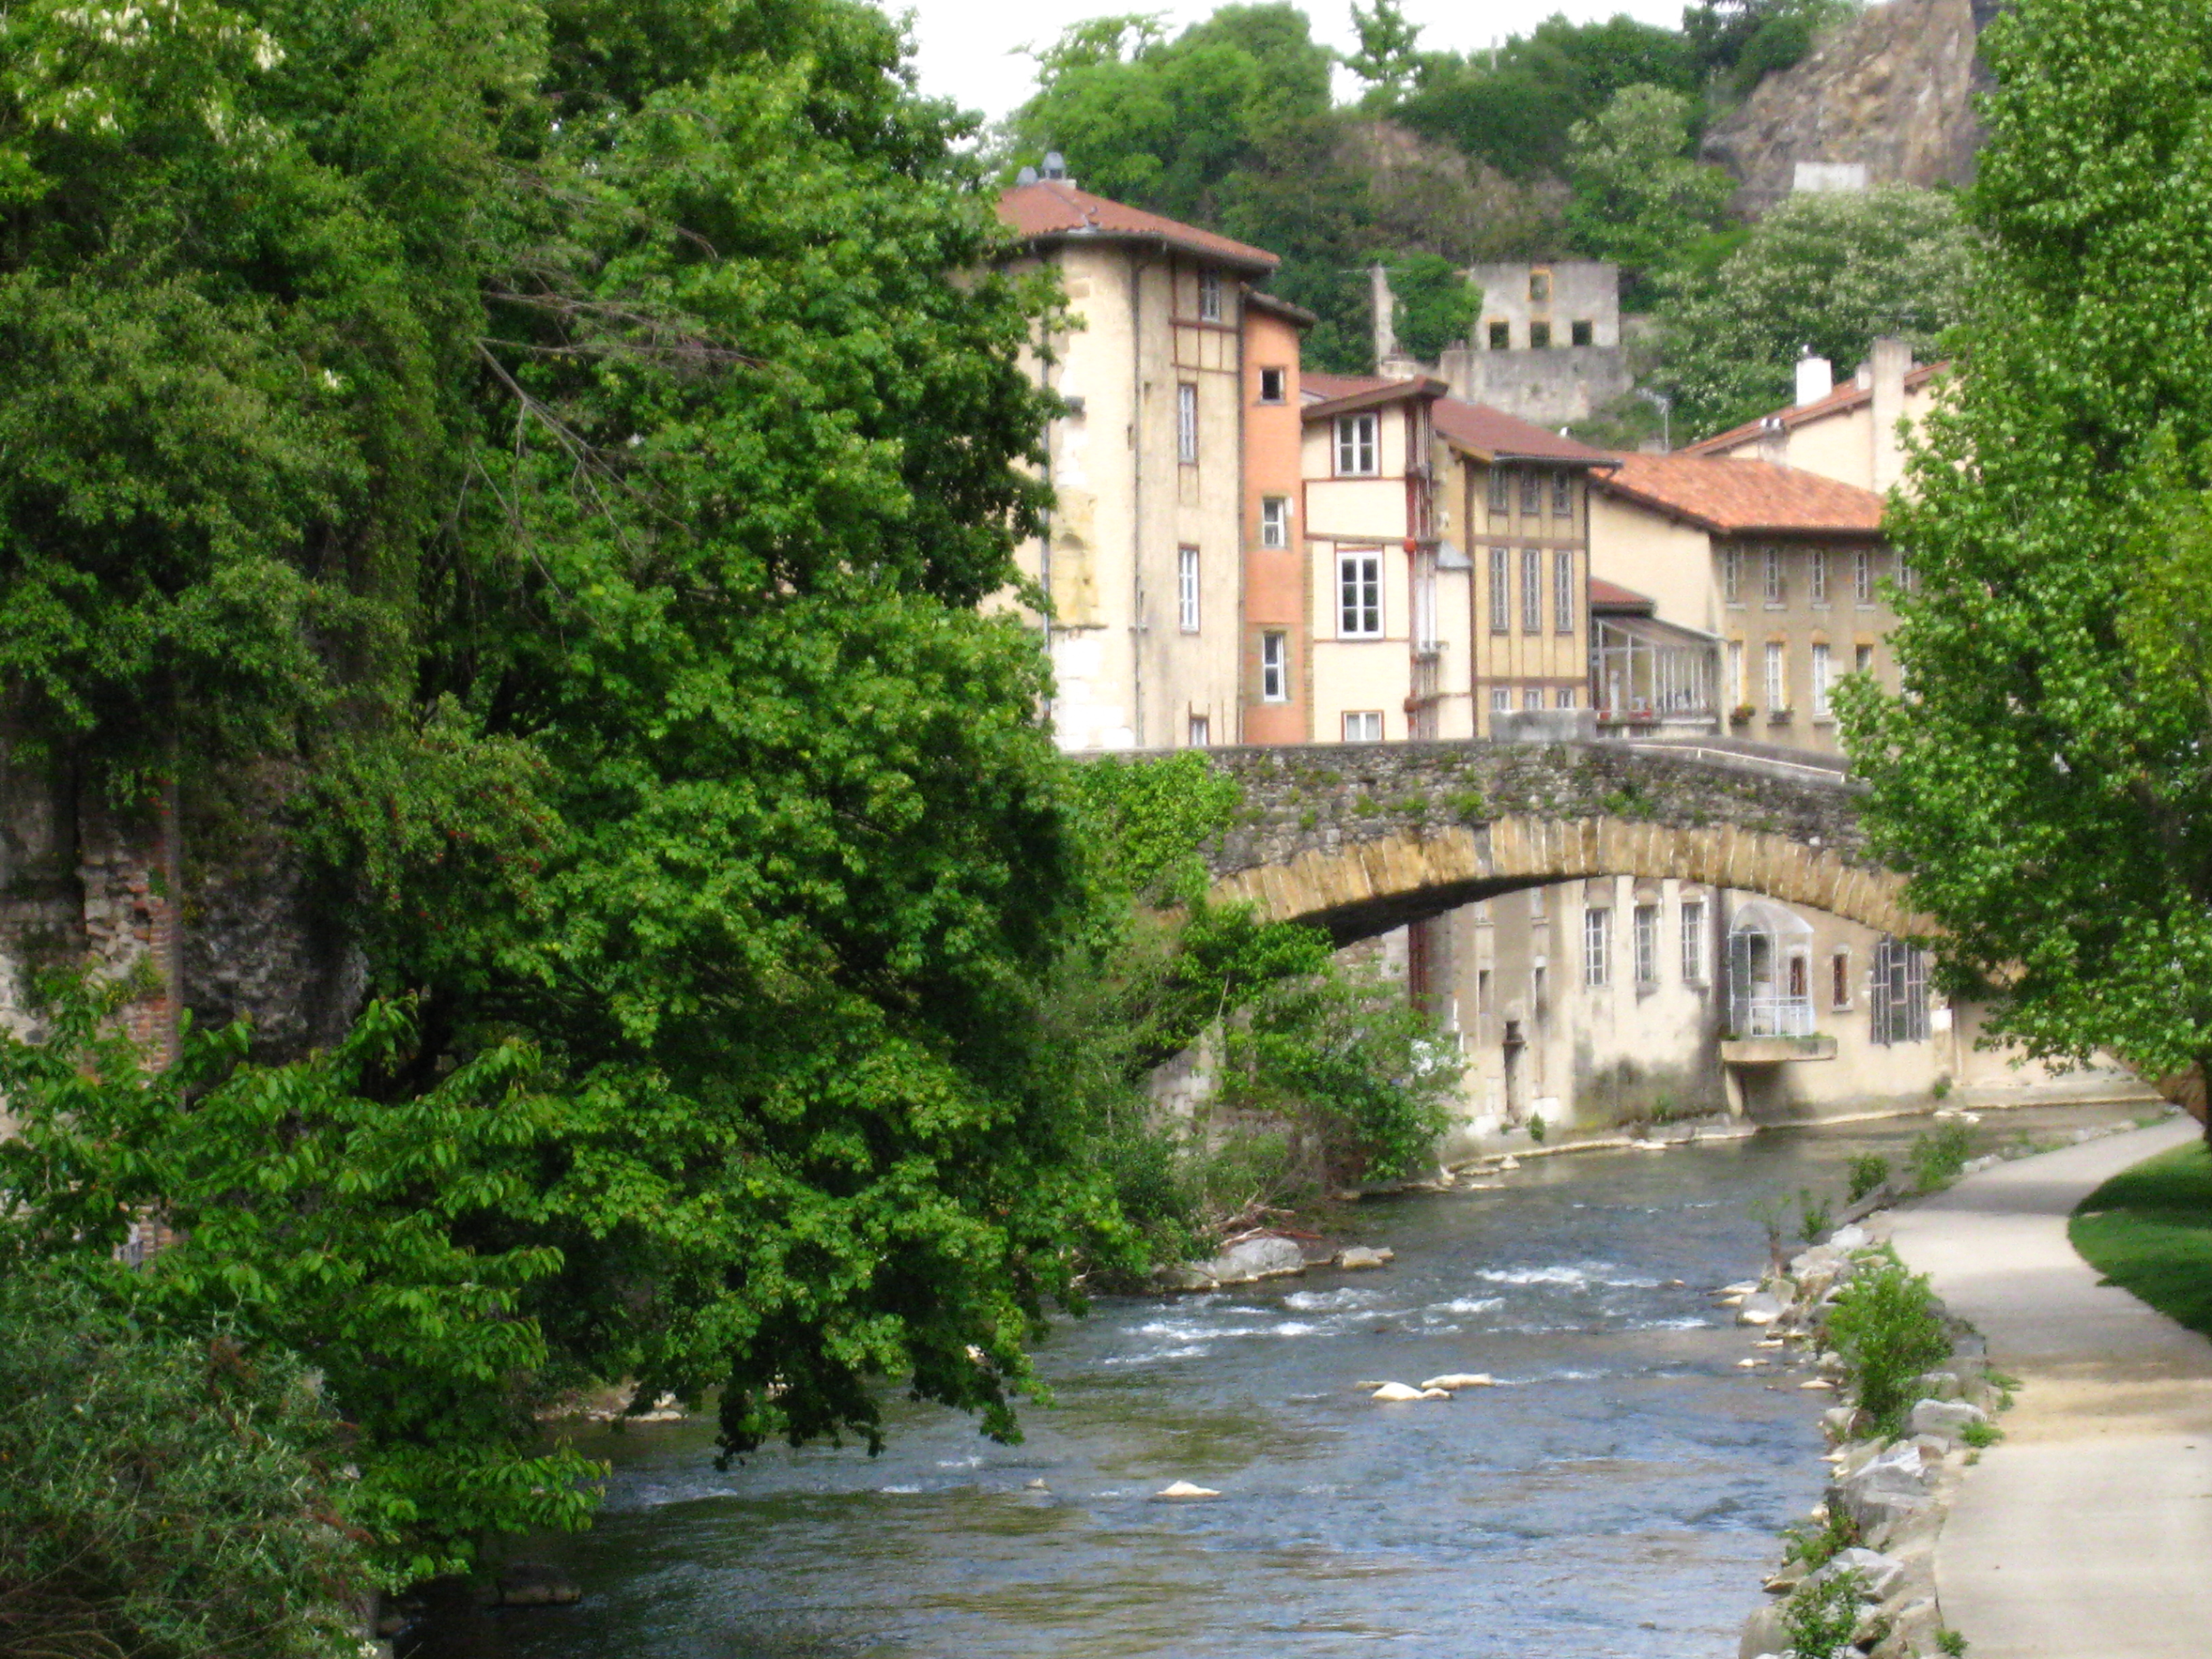  La rivière nait dans la forêt de Bonnevaux à 549 m d'altitude. Elle court sur 34,5 km avant de se jeter dans le Rhône 